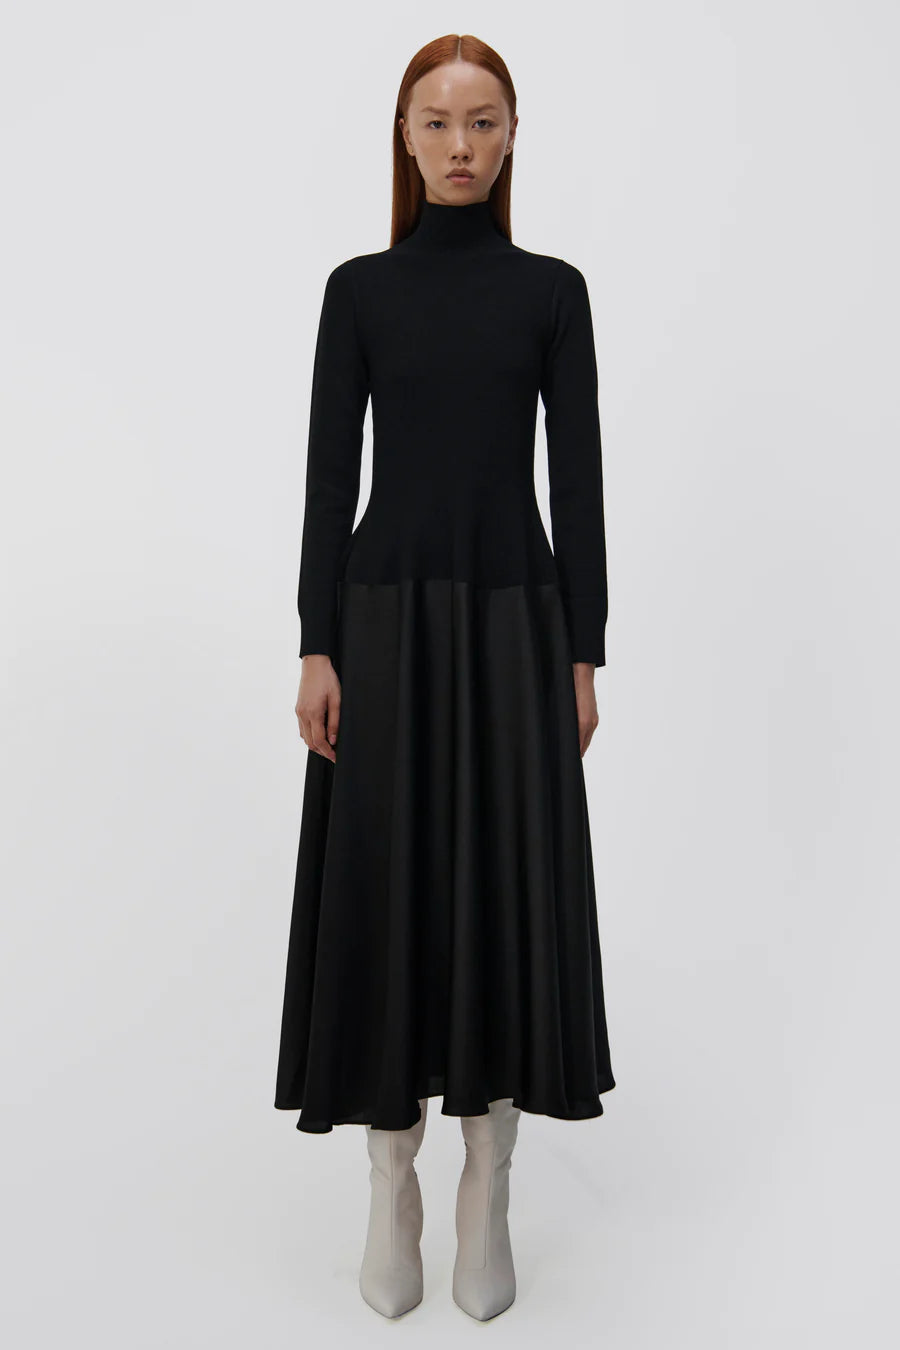 SIMKHAI Frances Satin Combo Midi Dress